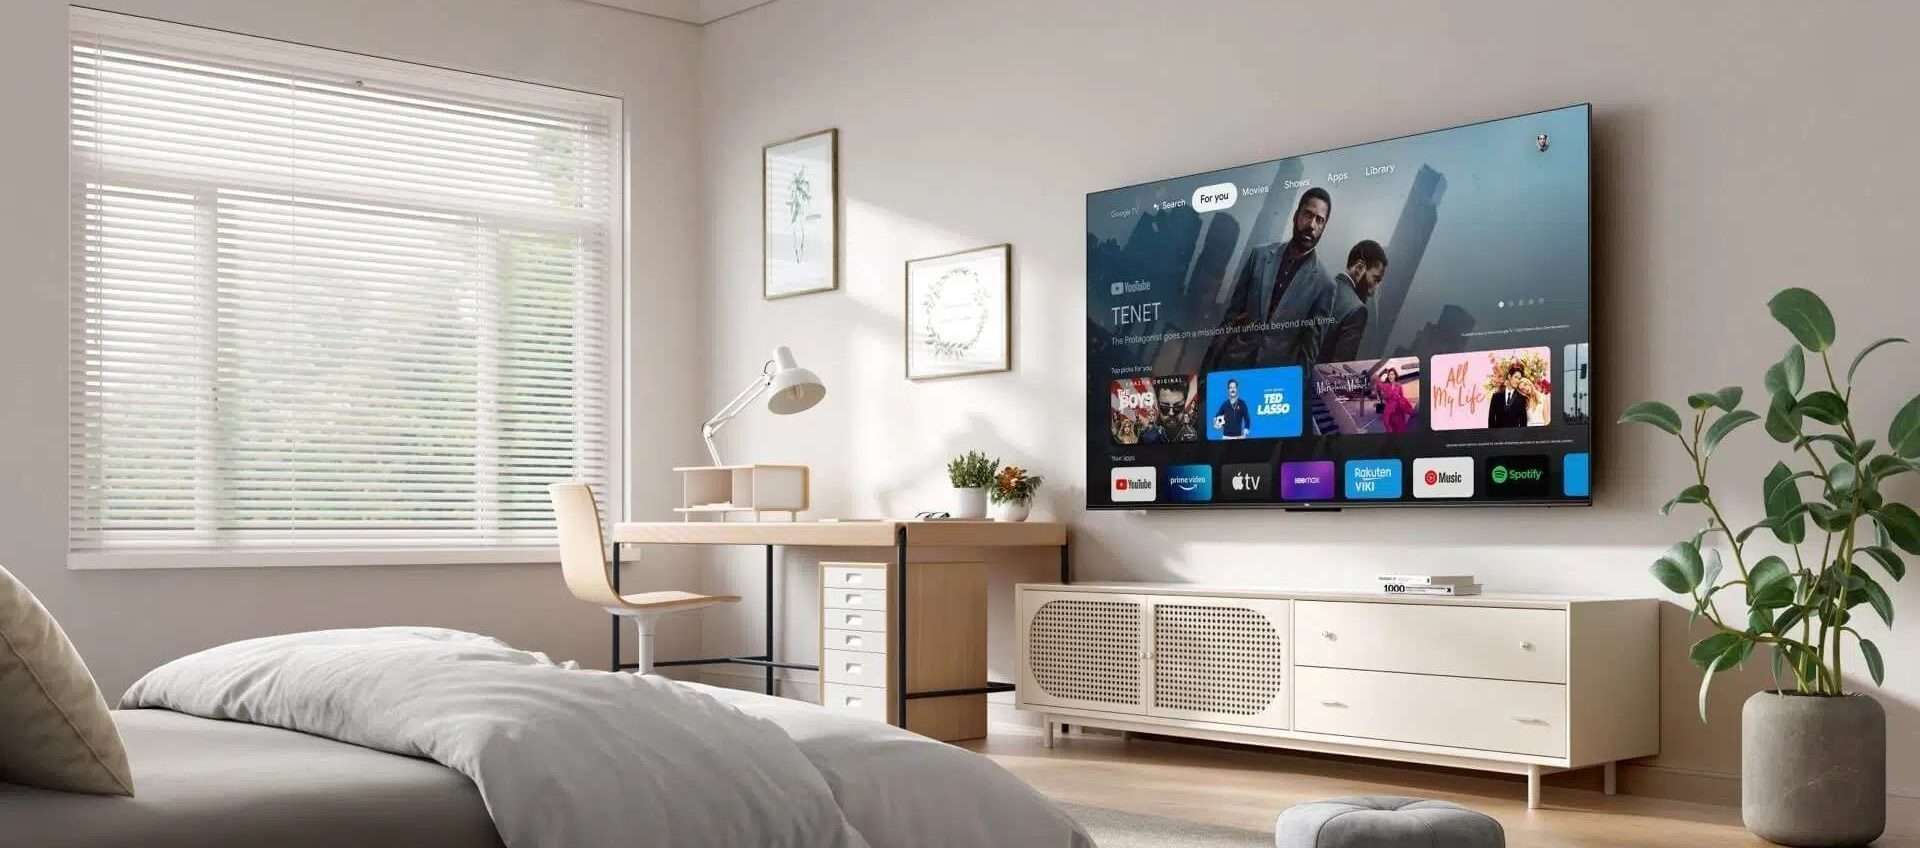 Smart TV da 55 pollici in offerta su Amazon: il prezzo cala a 379€